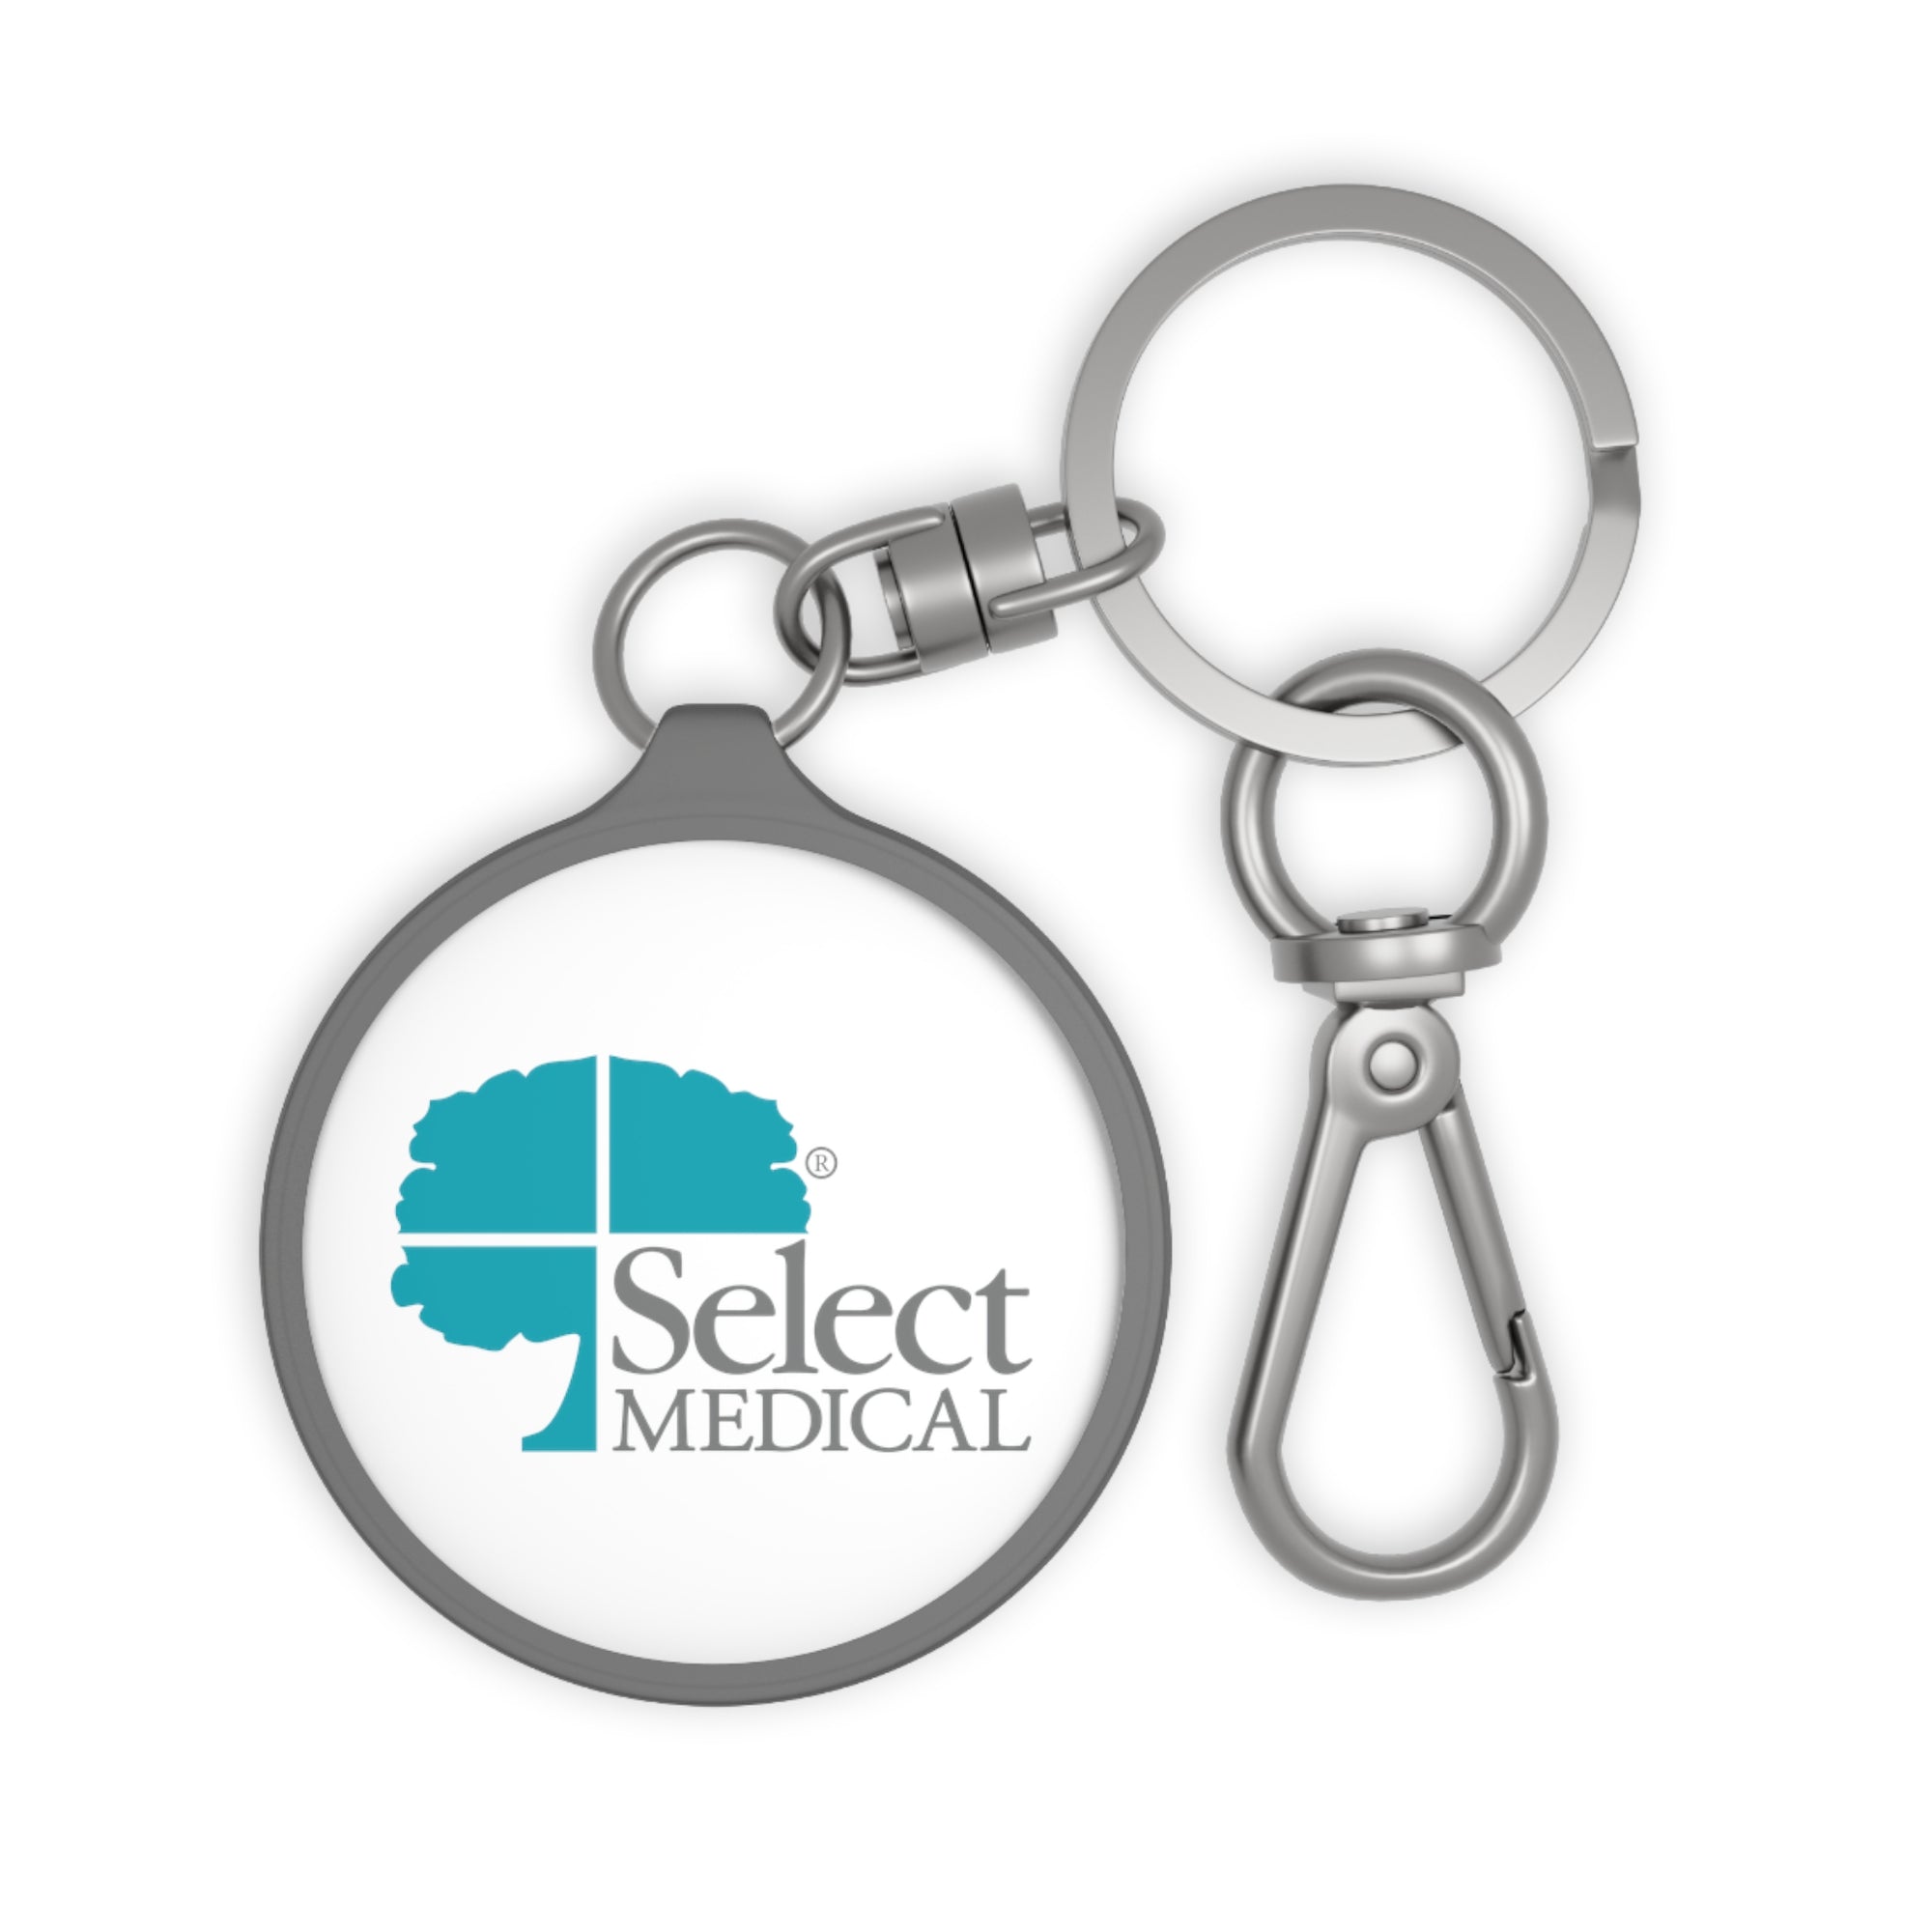 Select Medical Keyring Tag